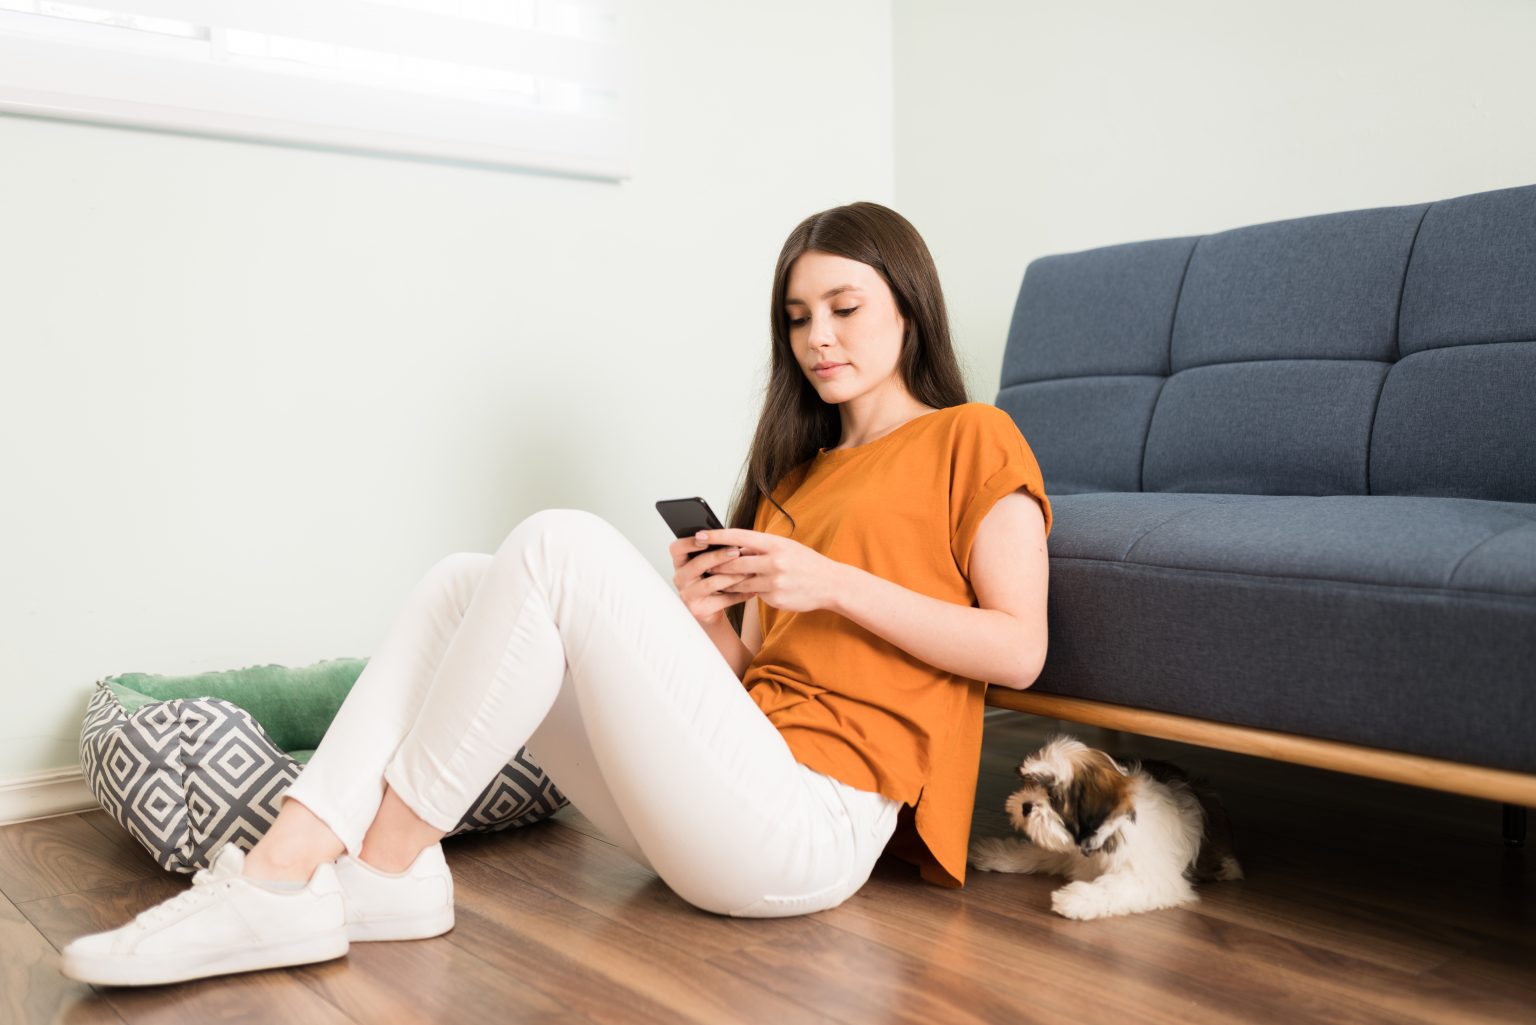 Une jeune femme séduisante se détend à la maison et envoie des SMS sur son smartphone pendant que son chien attend patiemment de jouer